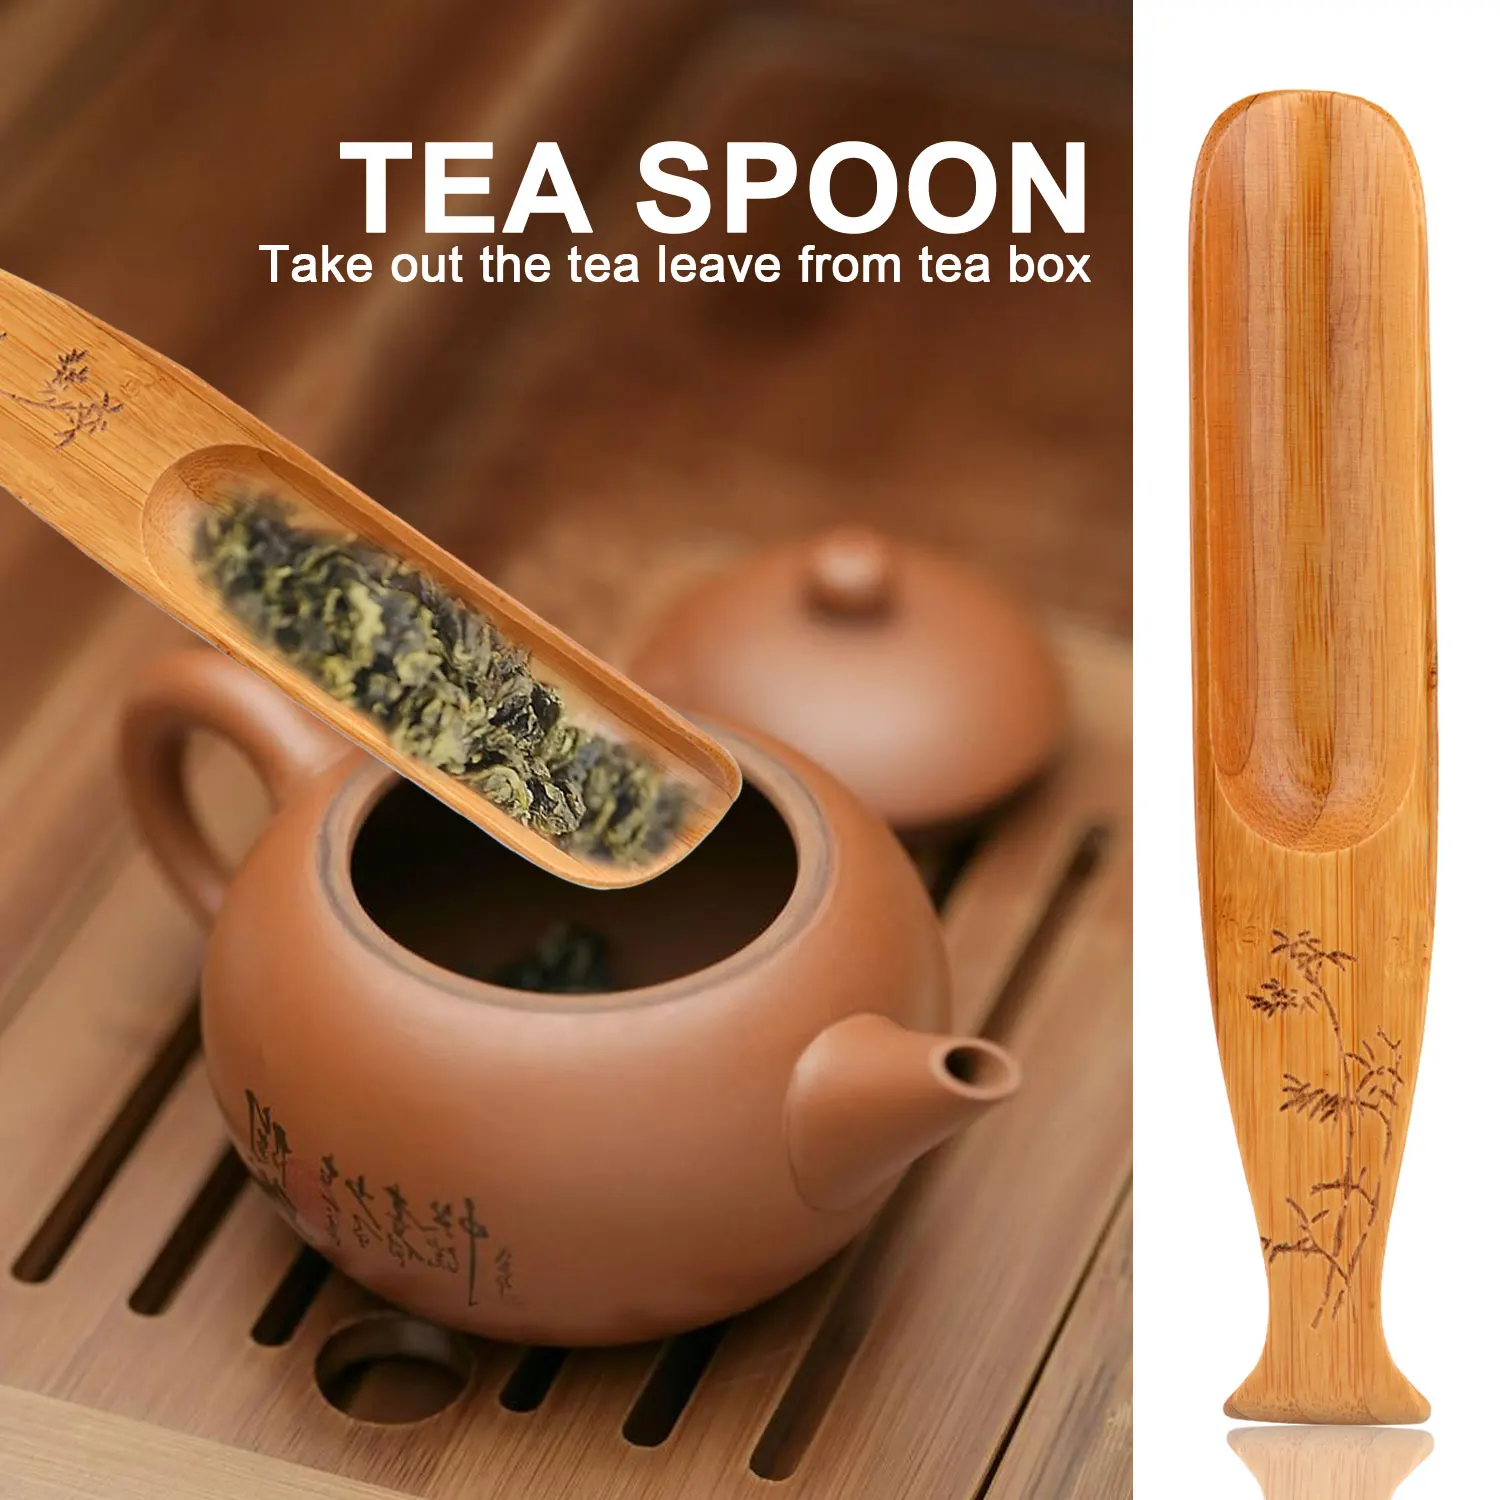 5 шт./компл. классические чайные аксессуары Совок игольчатый экскаватор чай зажим для чая ручной работы из натурального бамбука в китайском стиле с коробкой